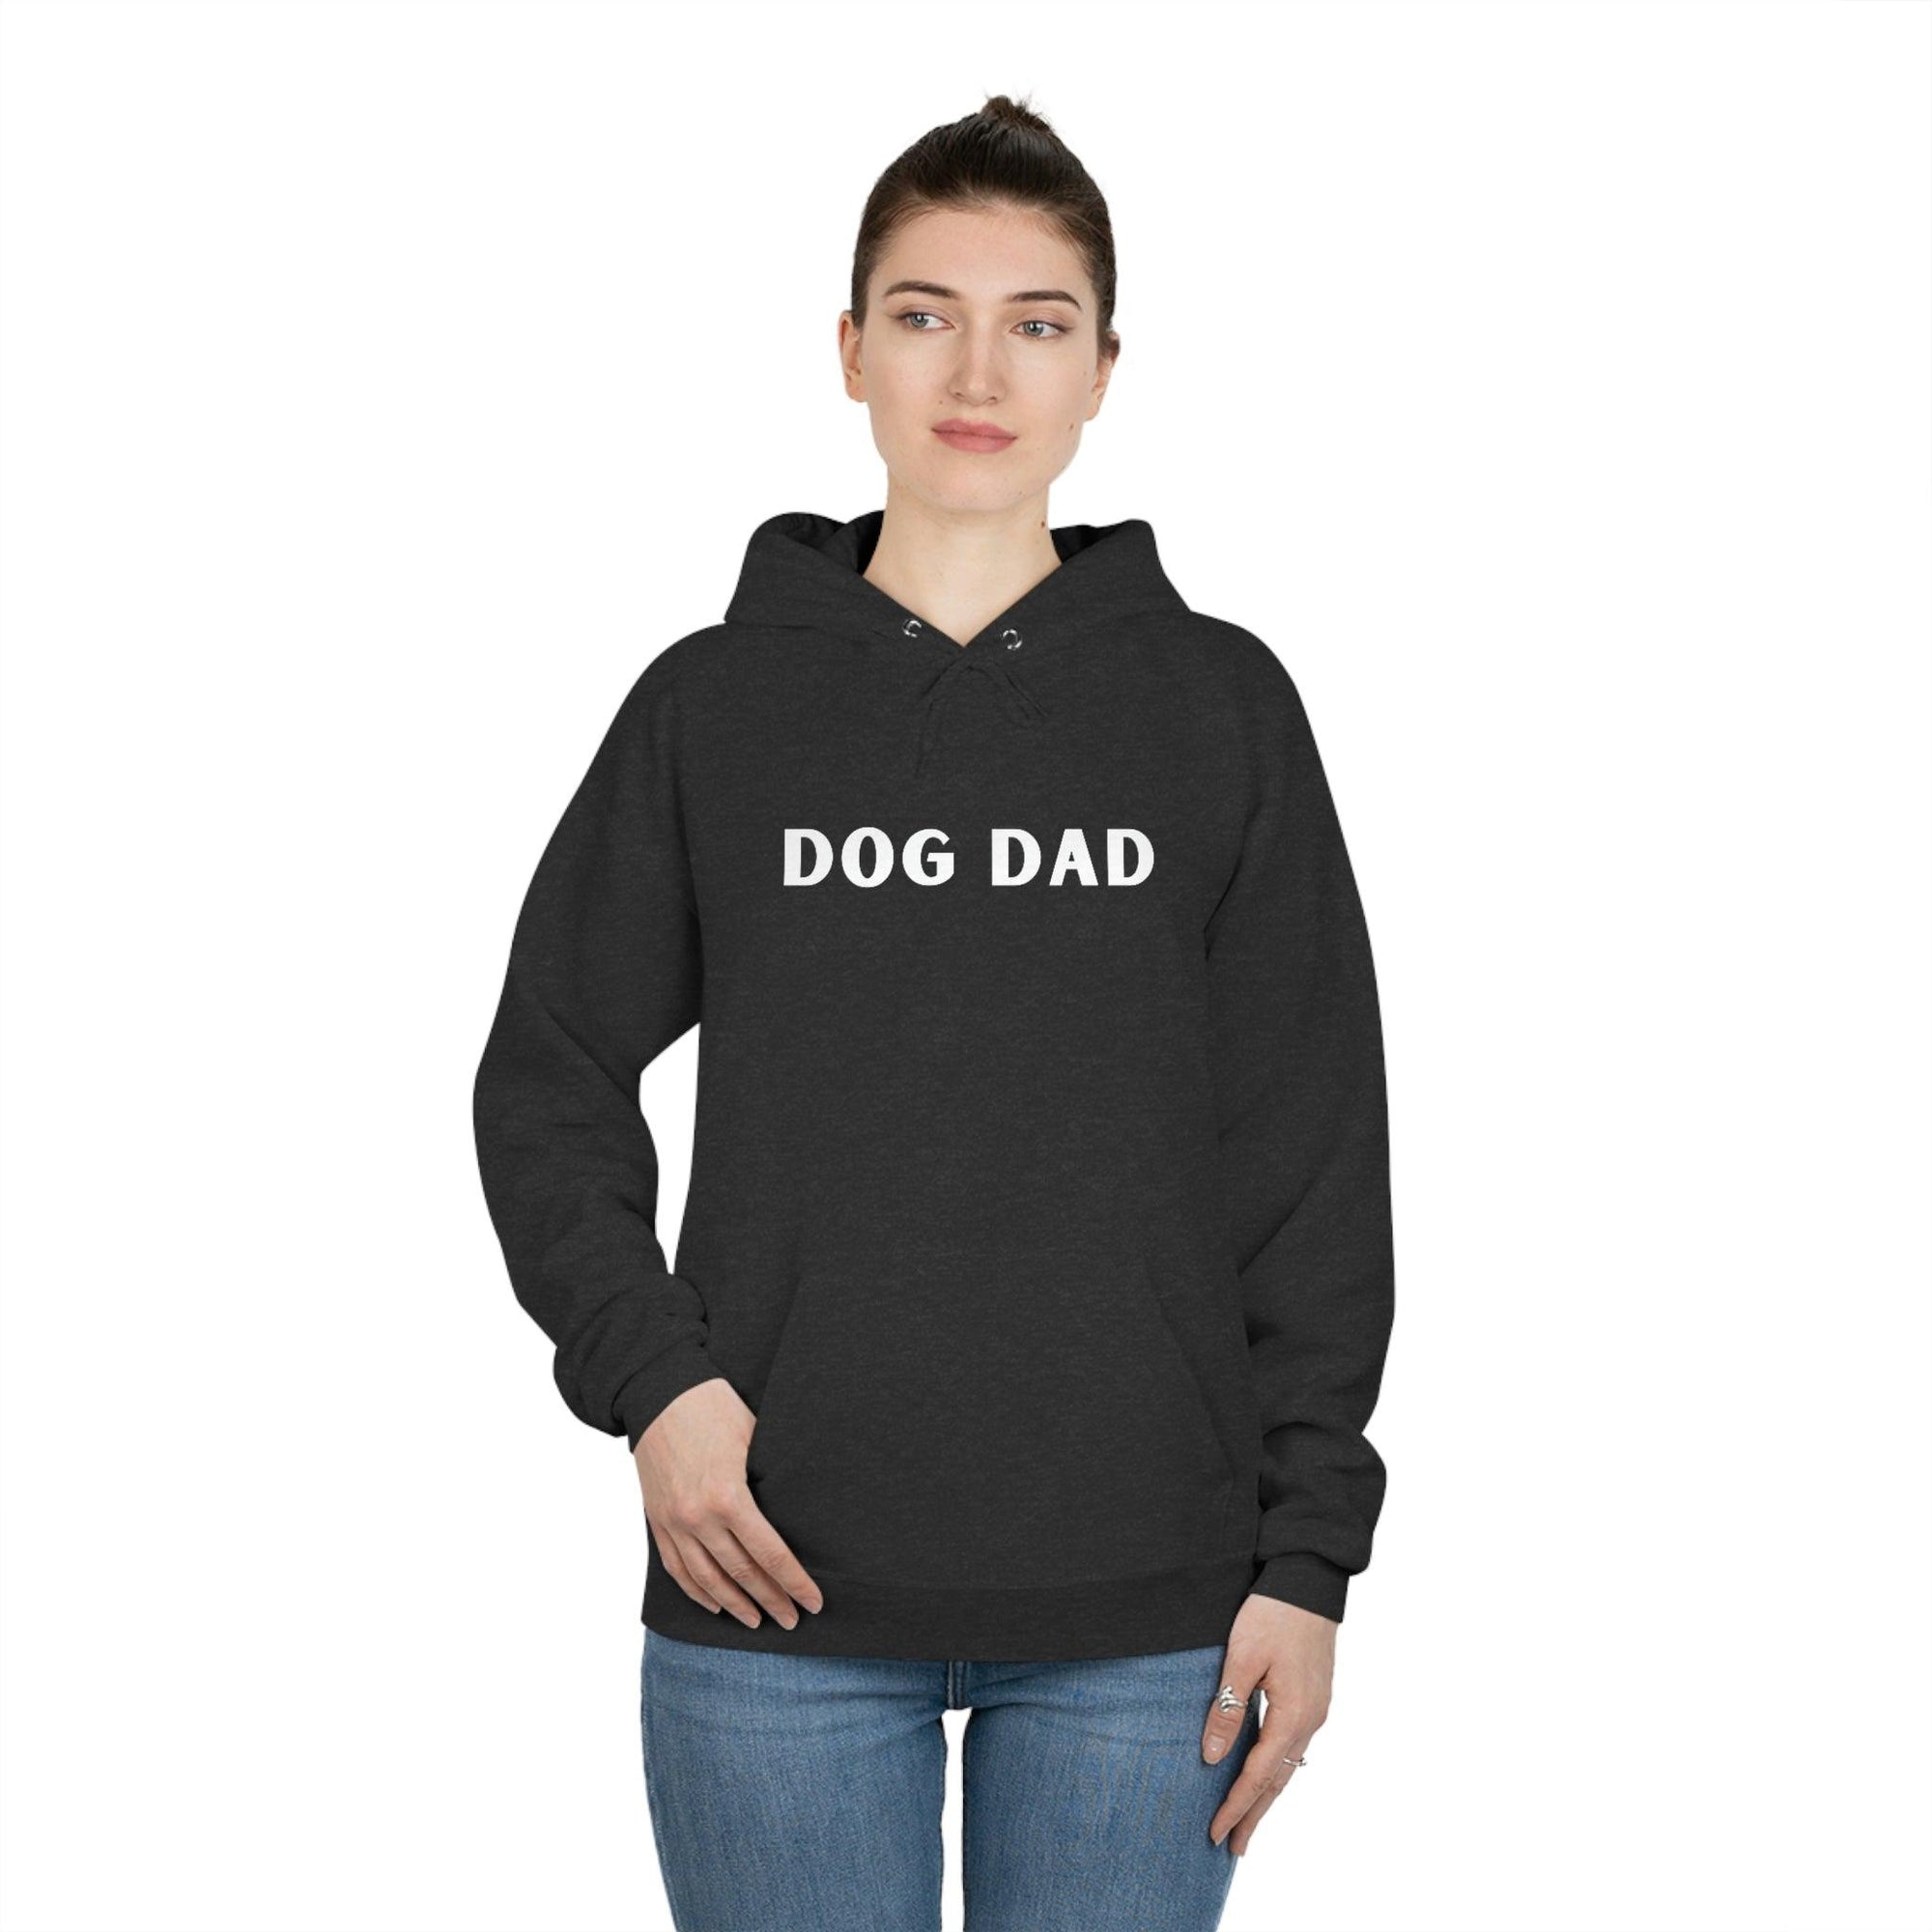 Dog Dad Pullover Hoodie Sweatshirt - Dope Dog 